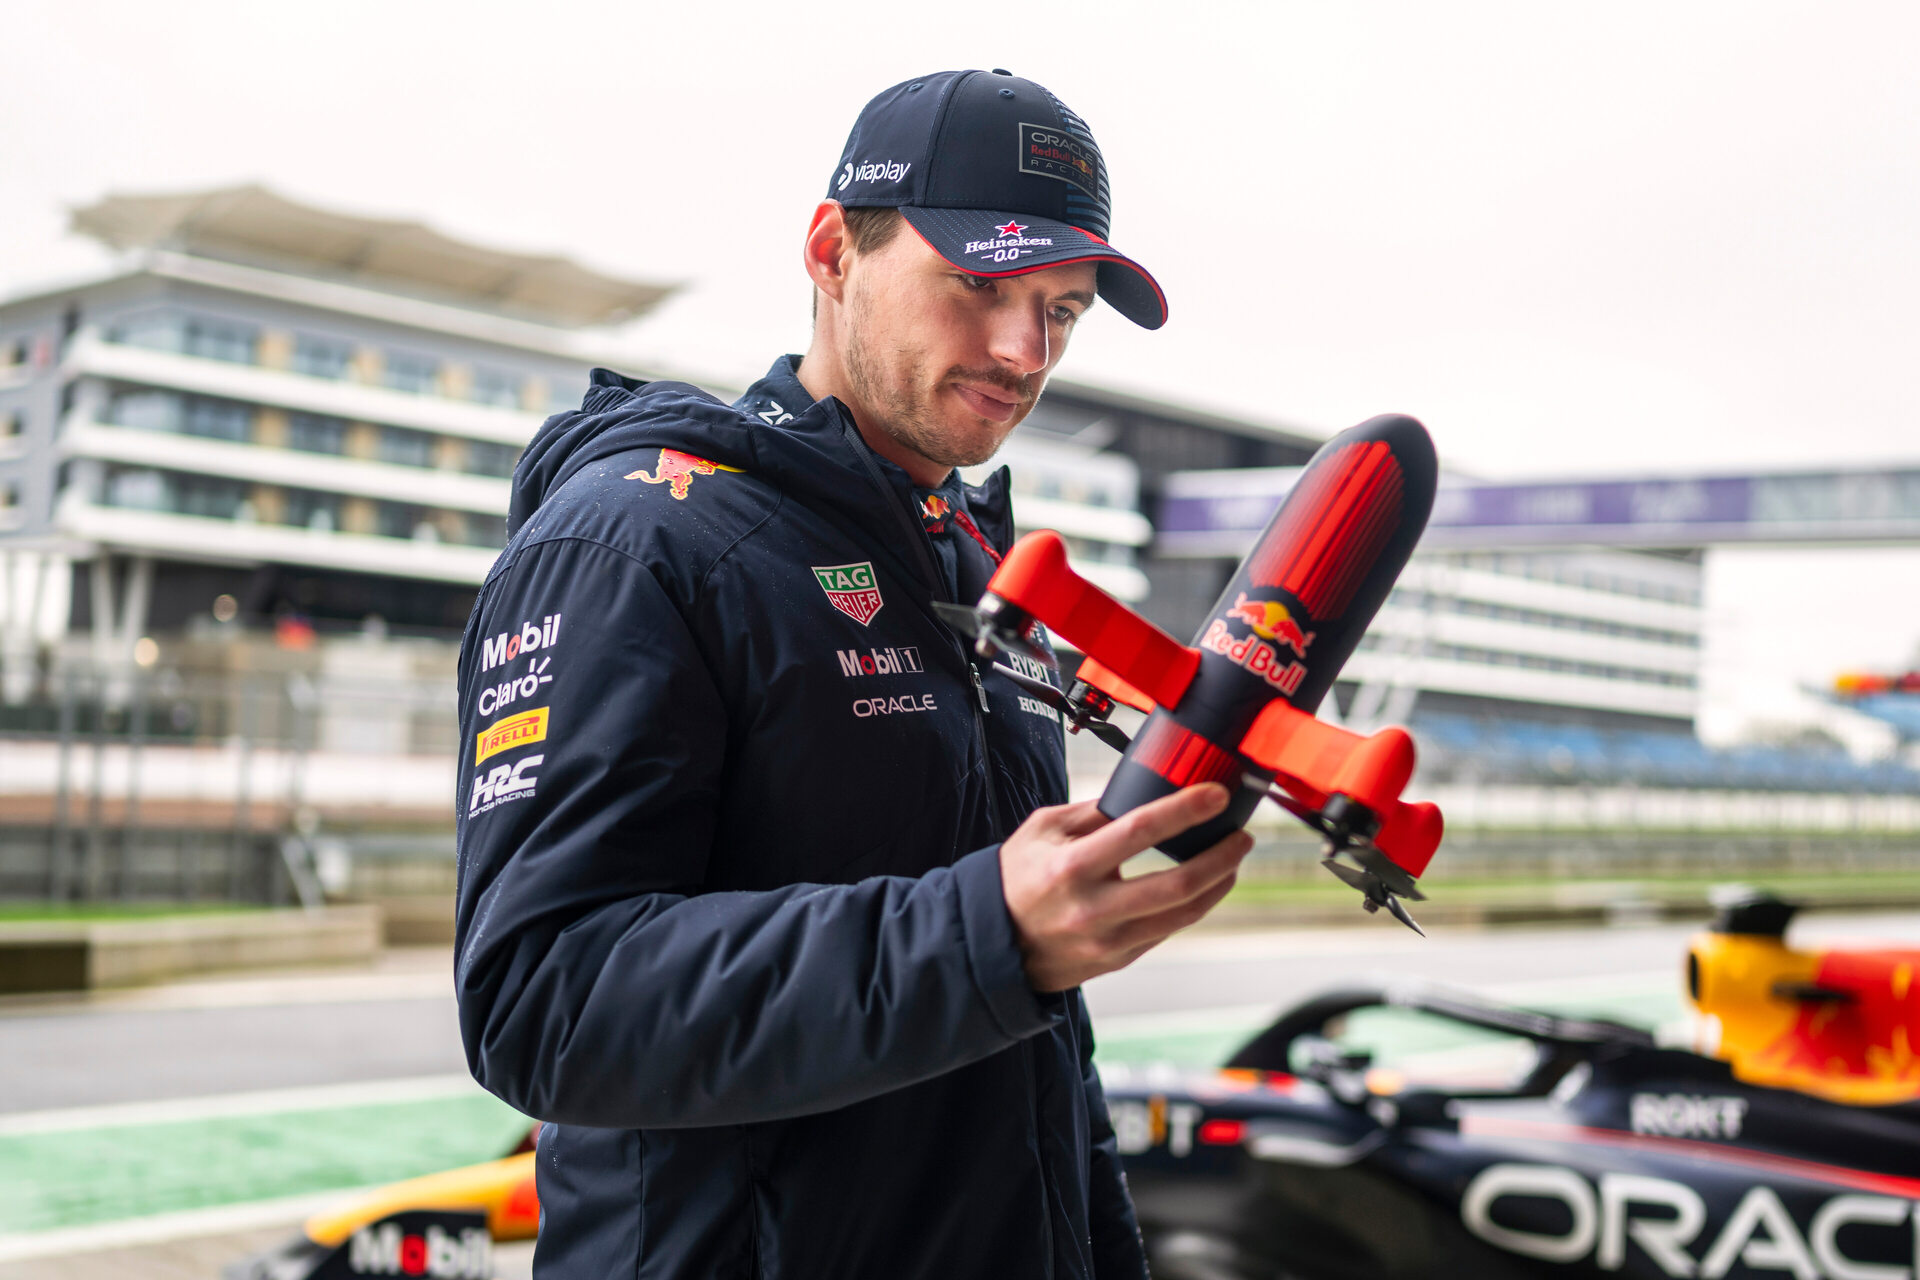 Maxas Verstappenas: Silverstoune Formulės 20 pasaulio čempionui Red Bull RB1 metė iššūkį